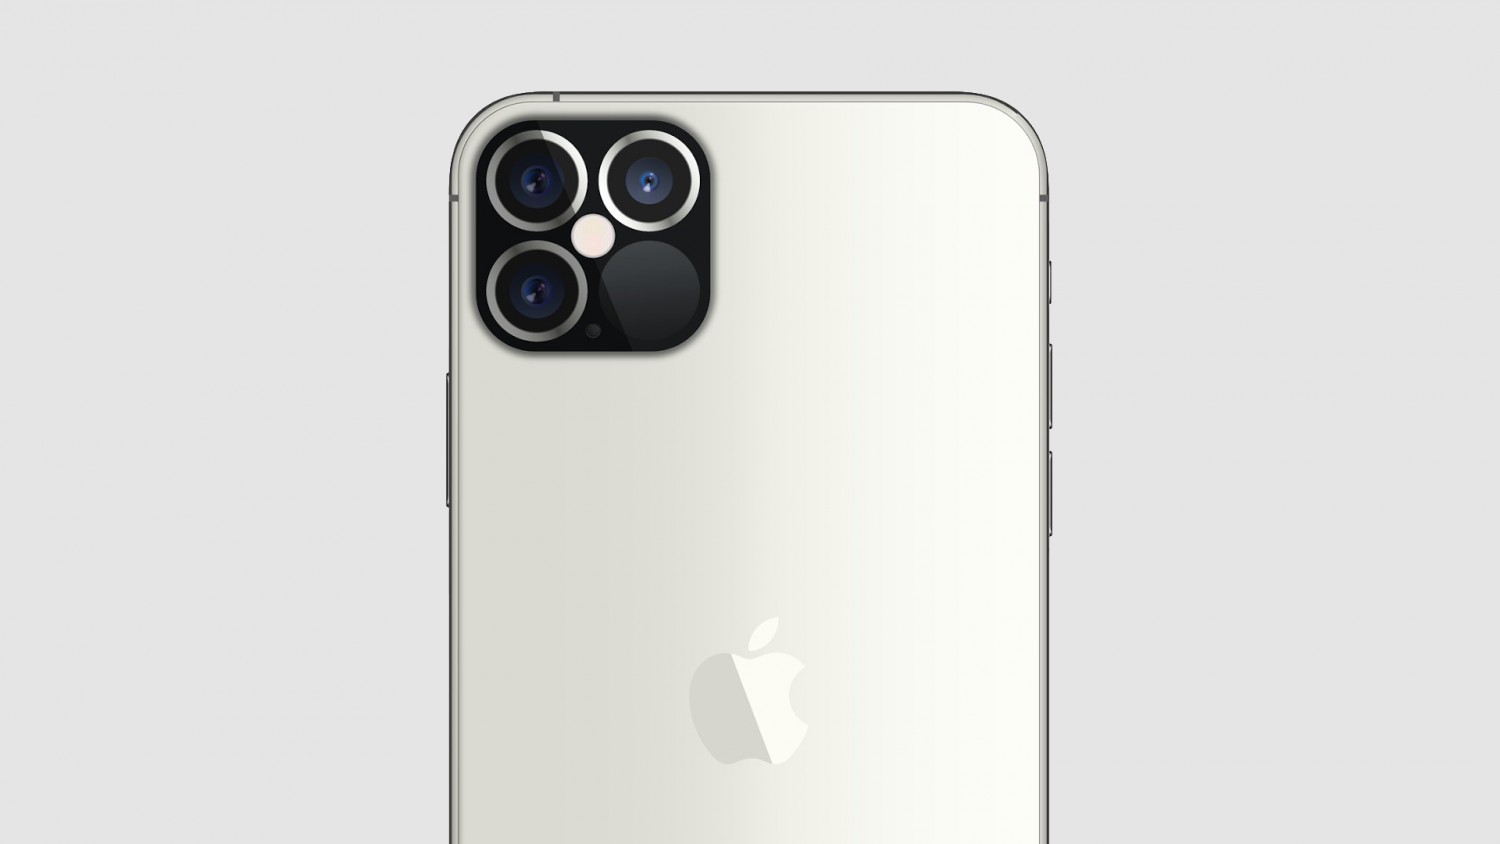 Утечка: так будет выглядеть камера iPhone 12 Pro с сенсором LiDAR